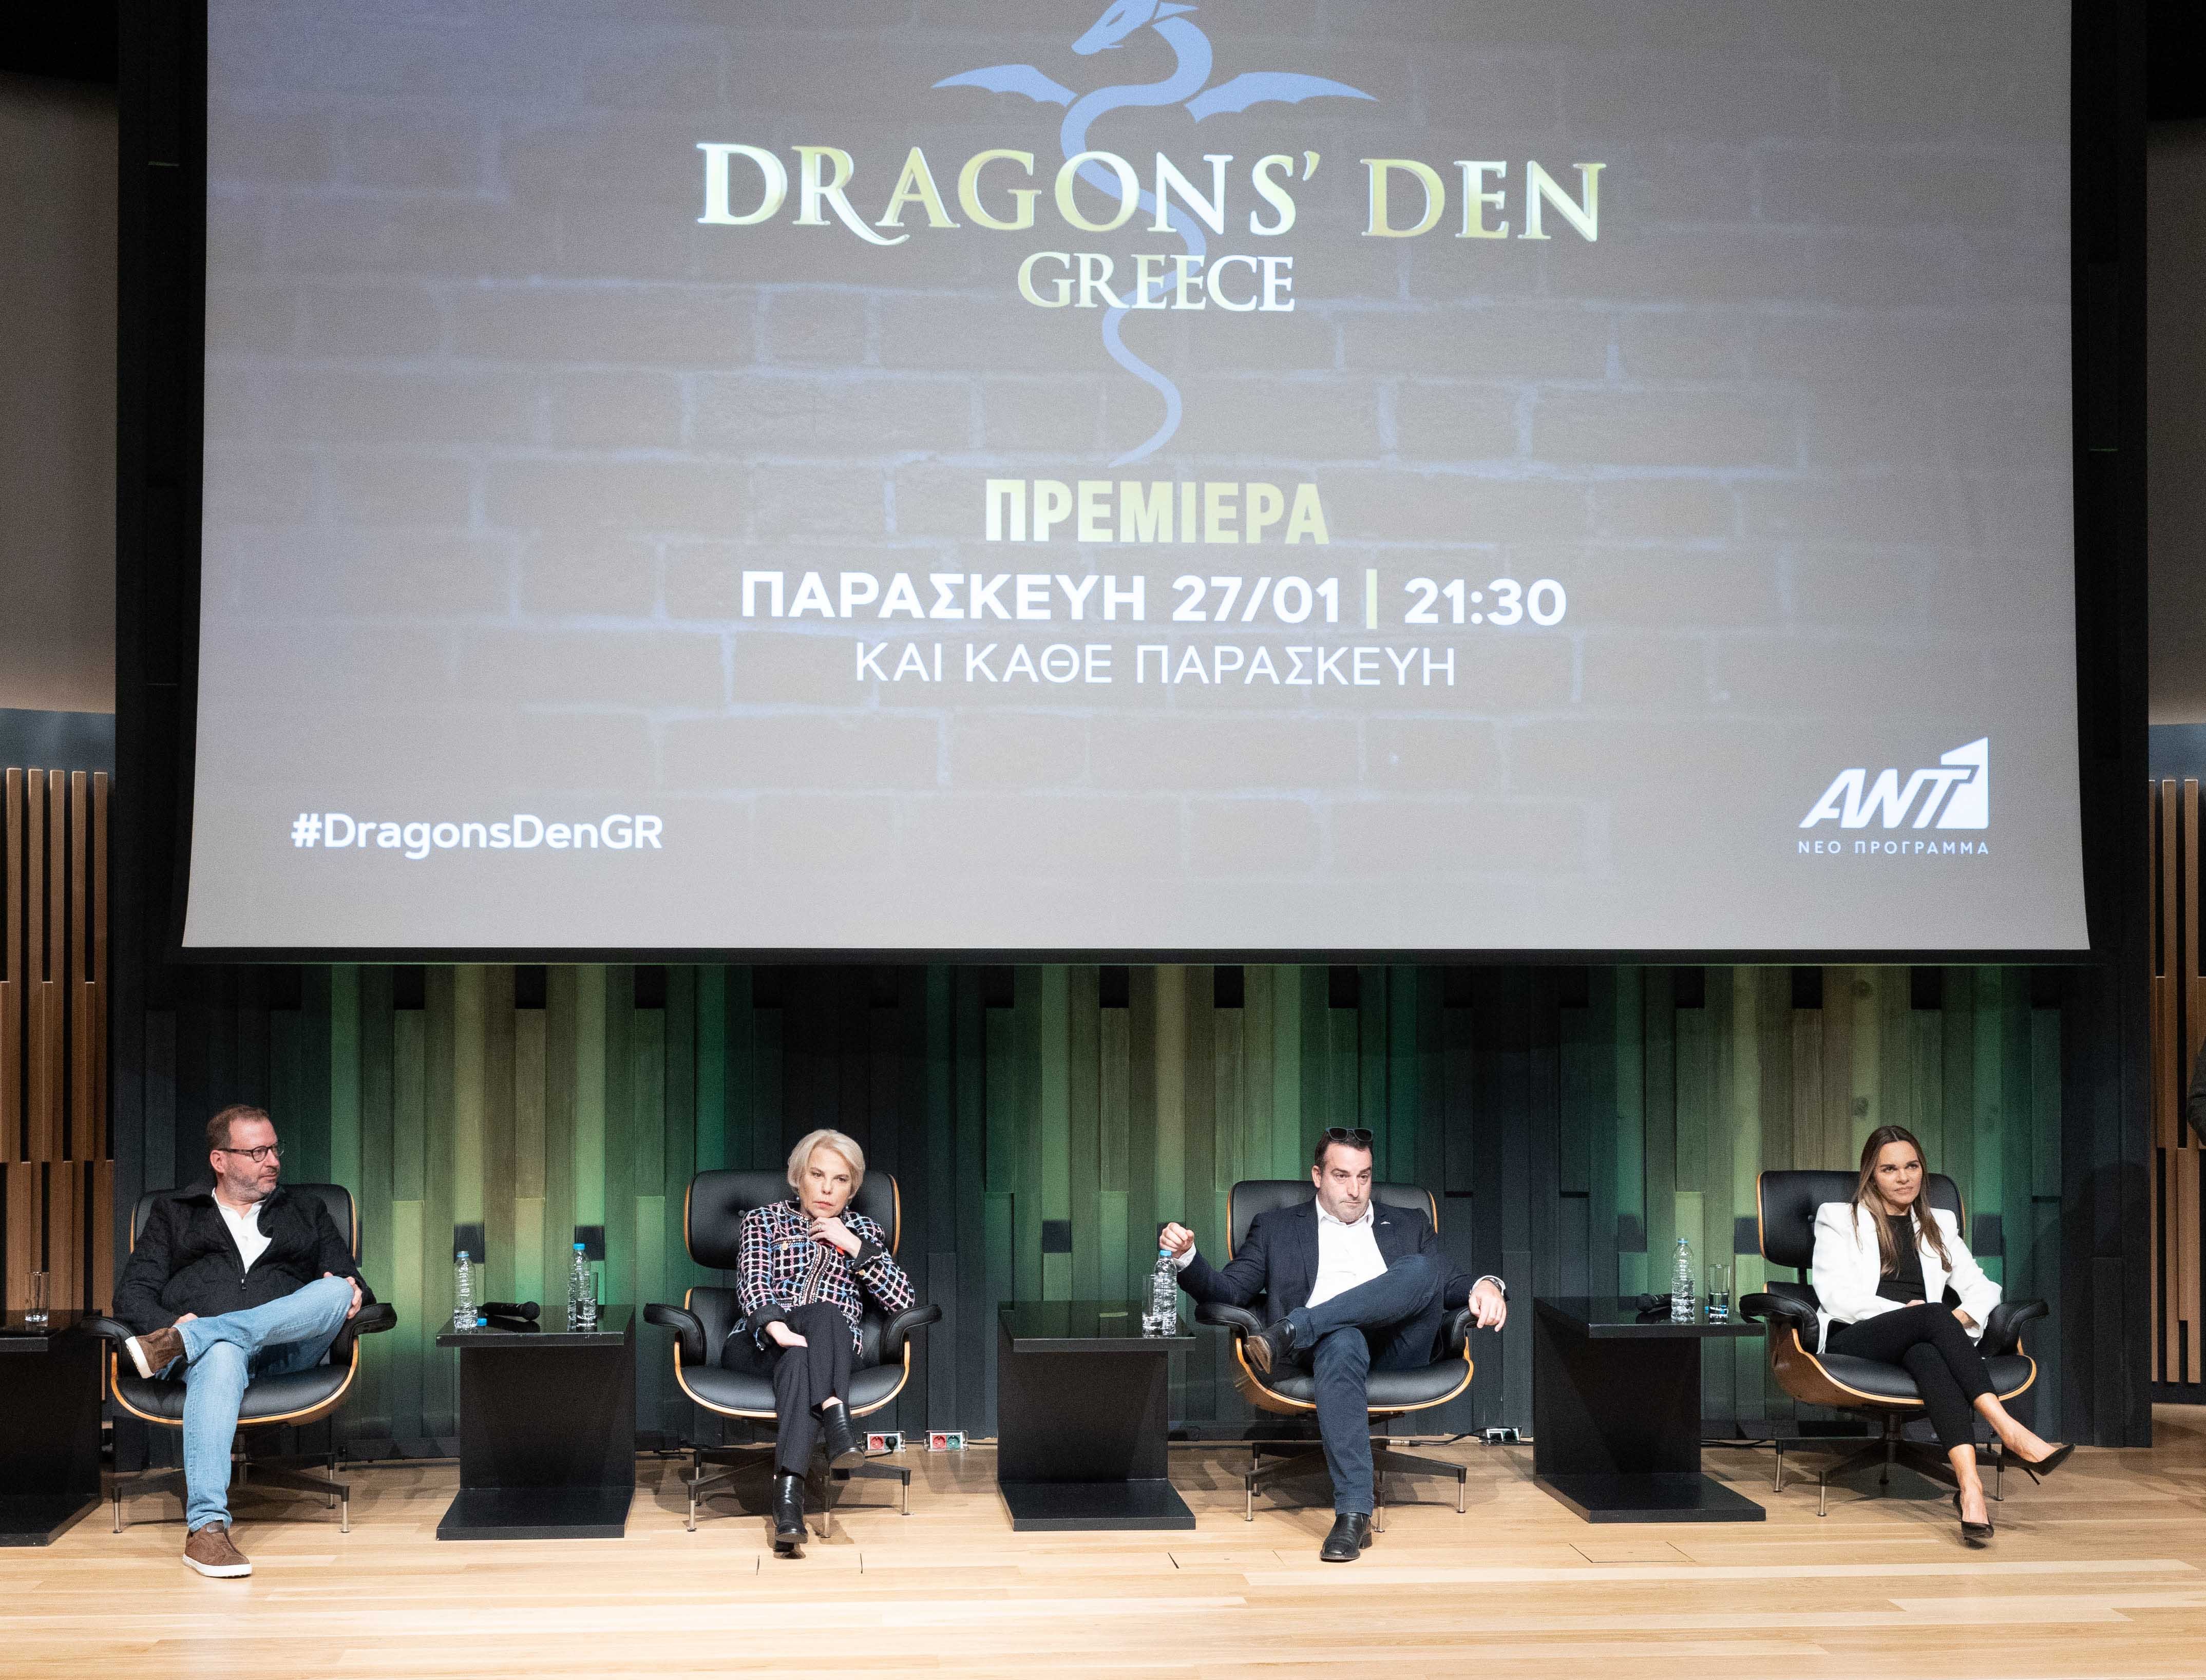 Dragons’ Den: Όσα είδαμε στη συνέντευξη τύπου του νέου show επενδύσεων και επιχειρηματικότητας του ΑΝΤ1 